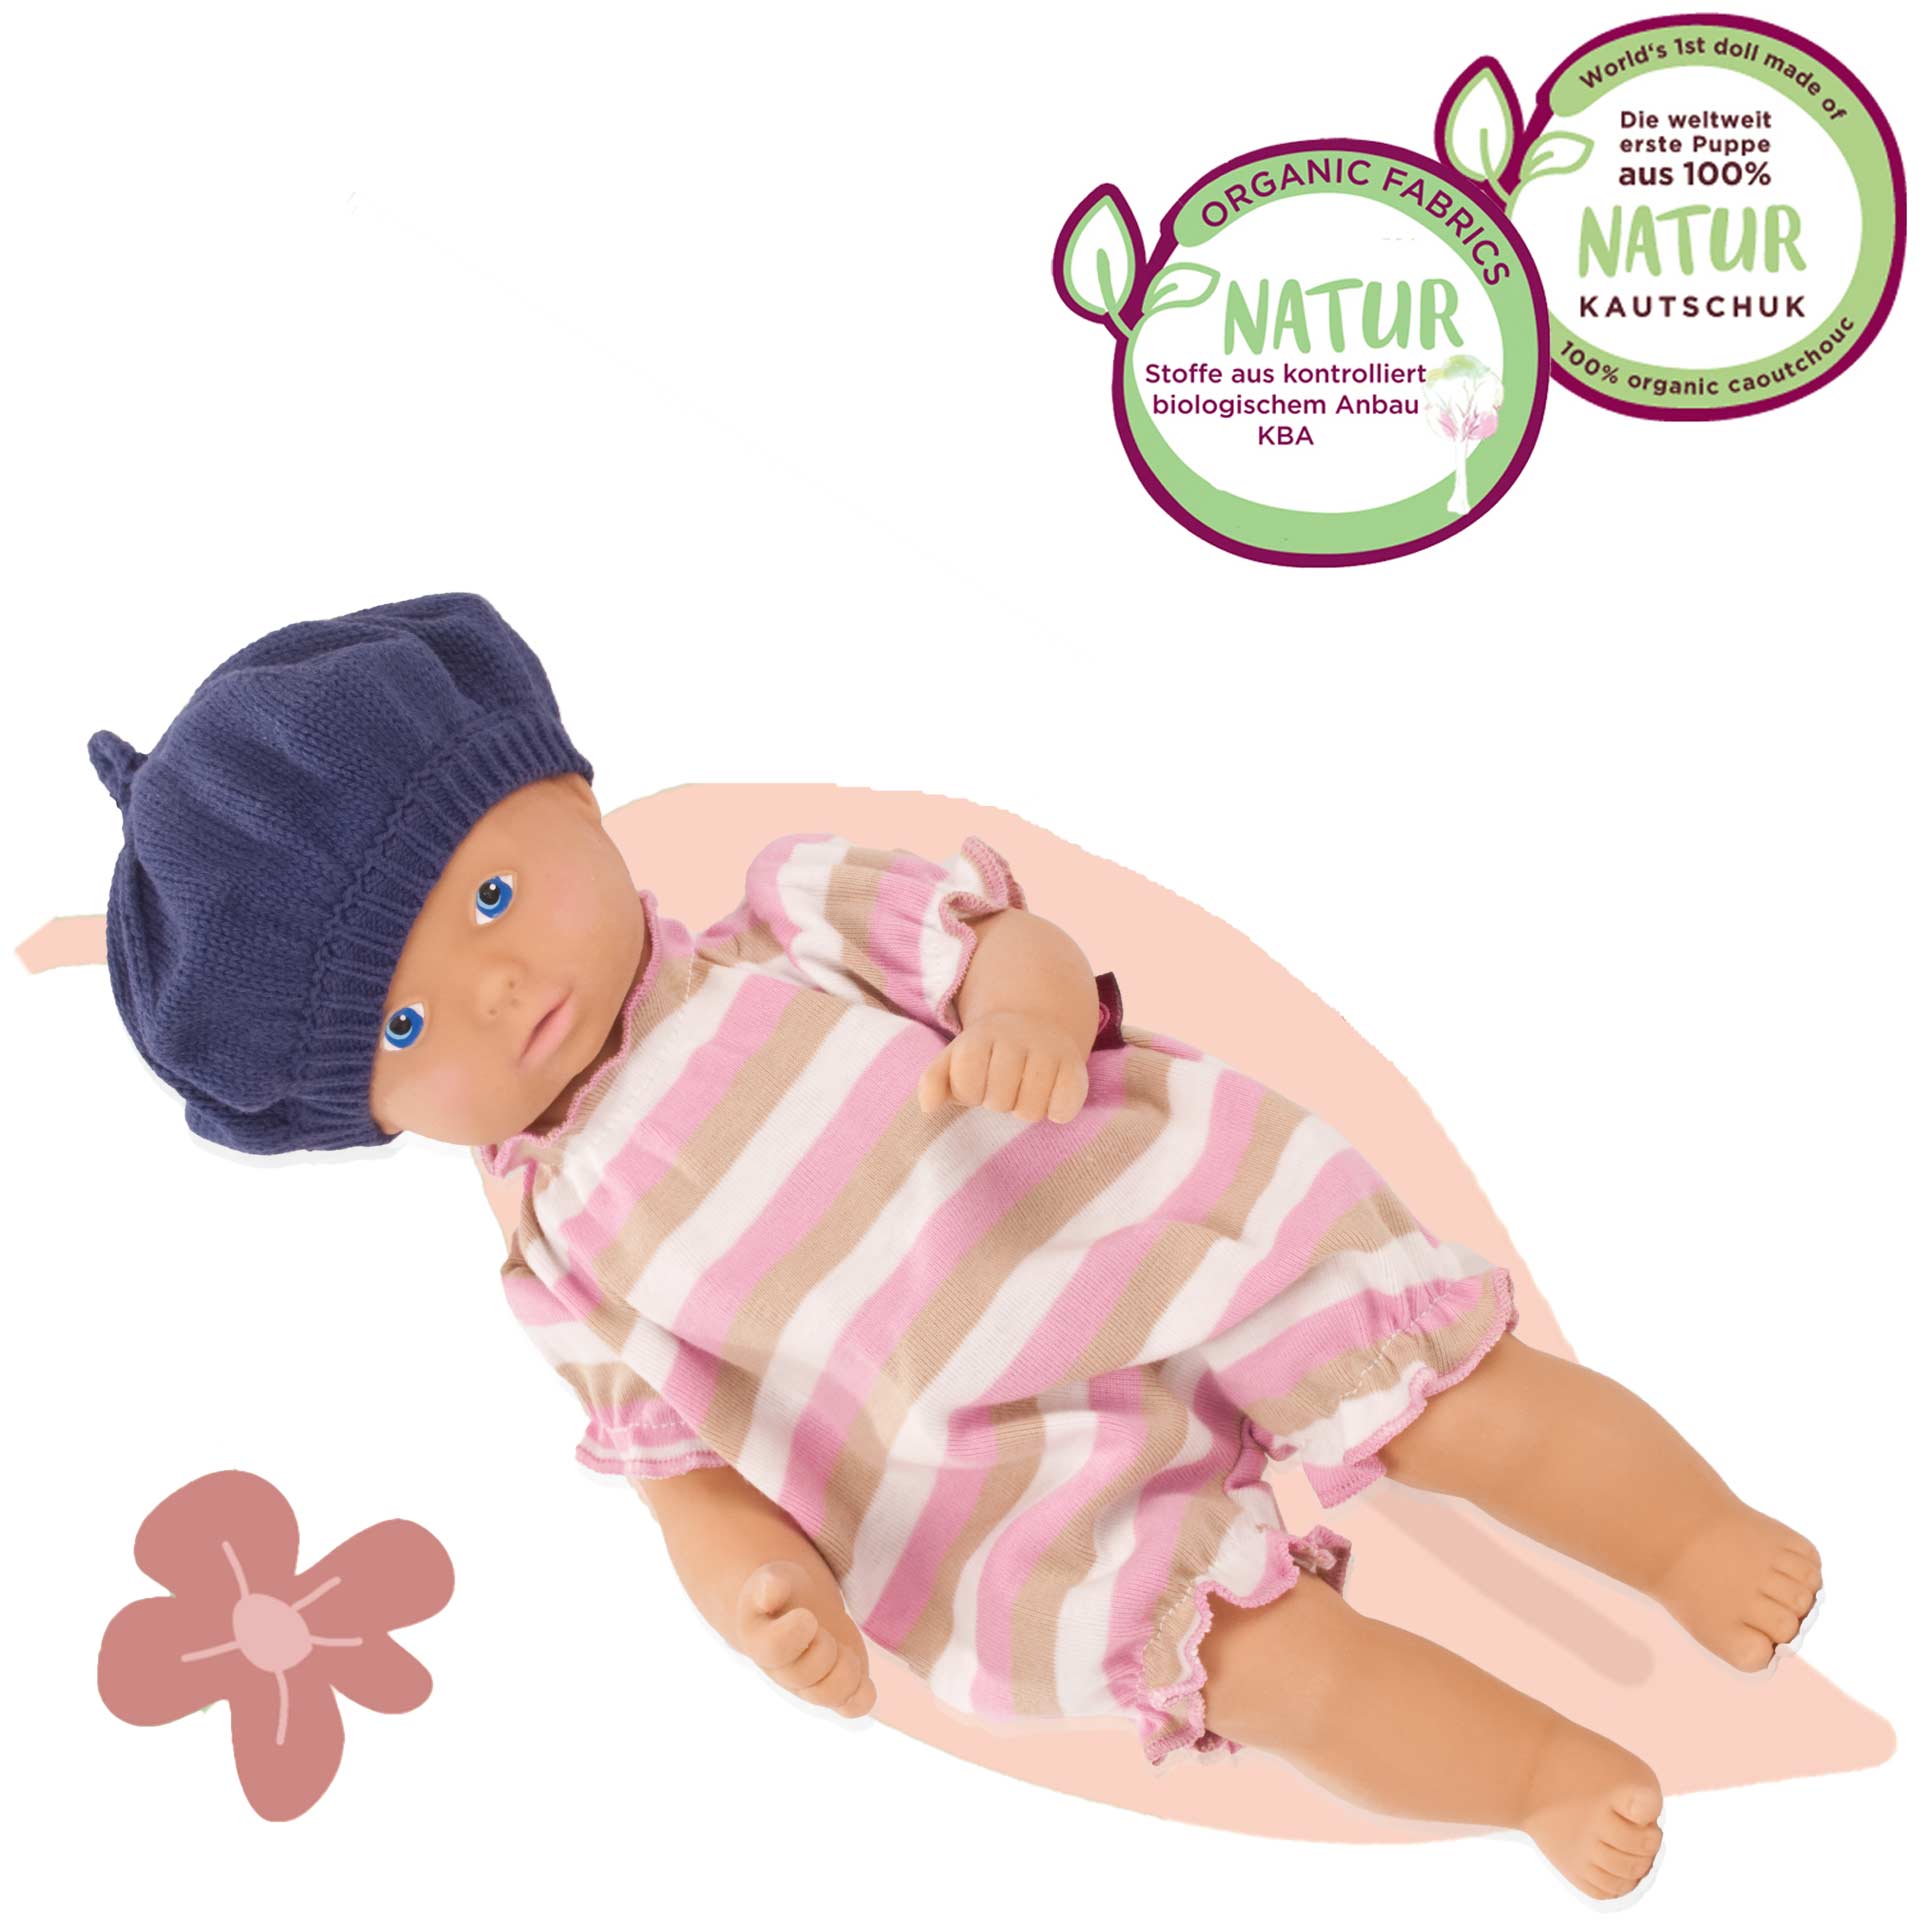 Compléments Götz pour poupées bébé - Biberon magique - Dolls And Dolls -  Boutique de Poupées de collection